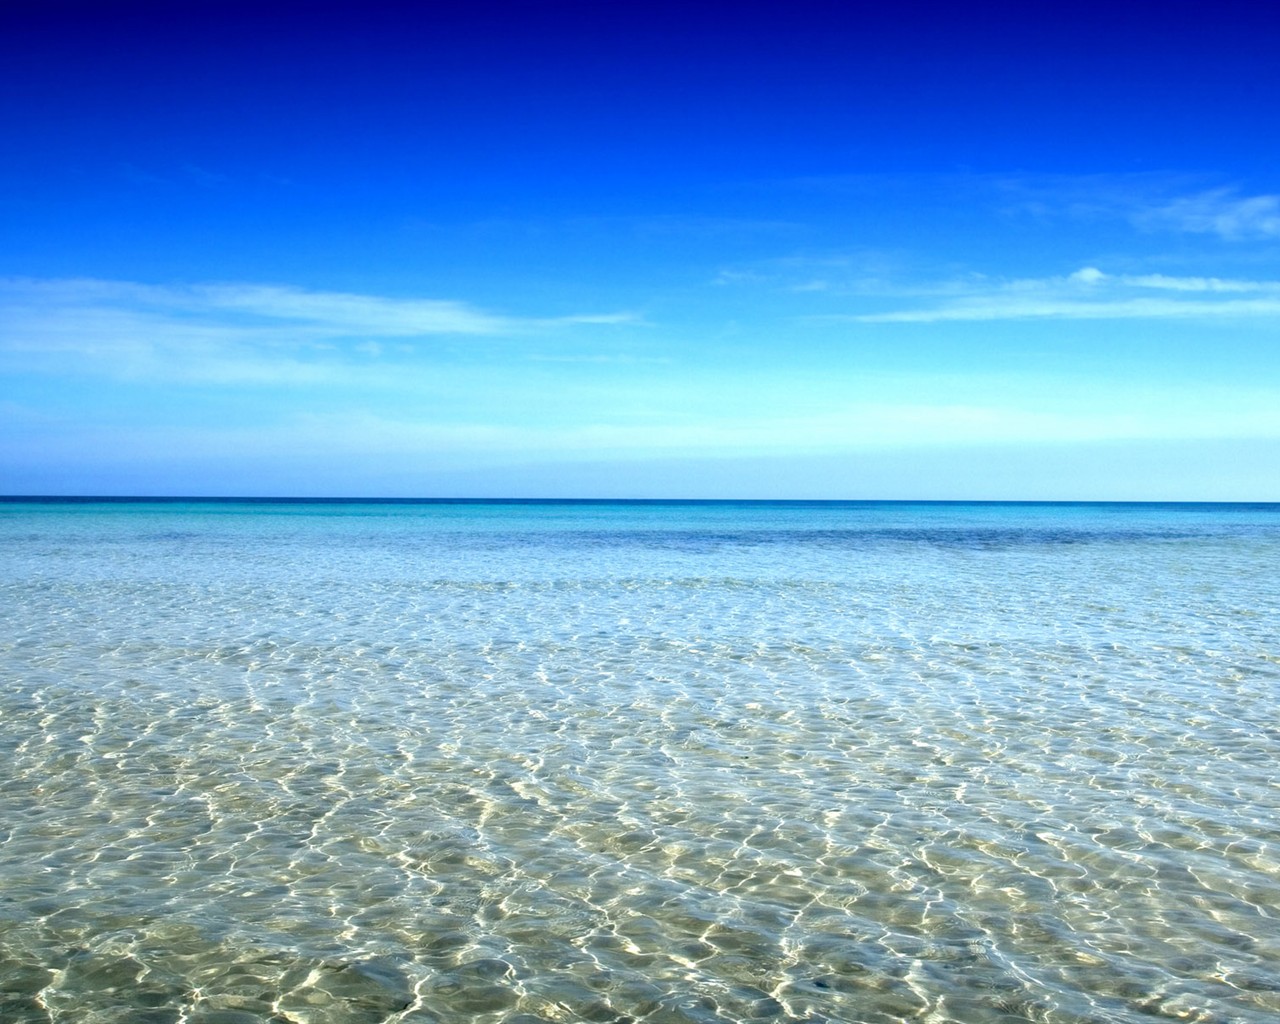 Die schöne Landschaft am Meer HD Wallpapers #8 - 1280x1024